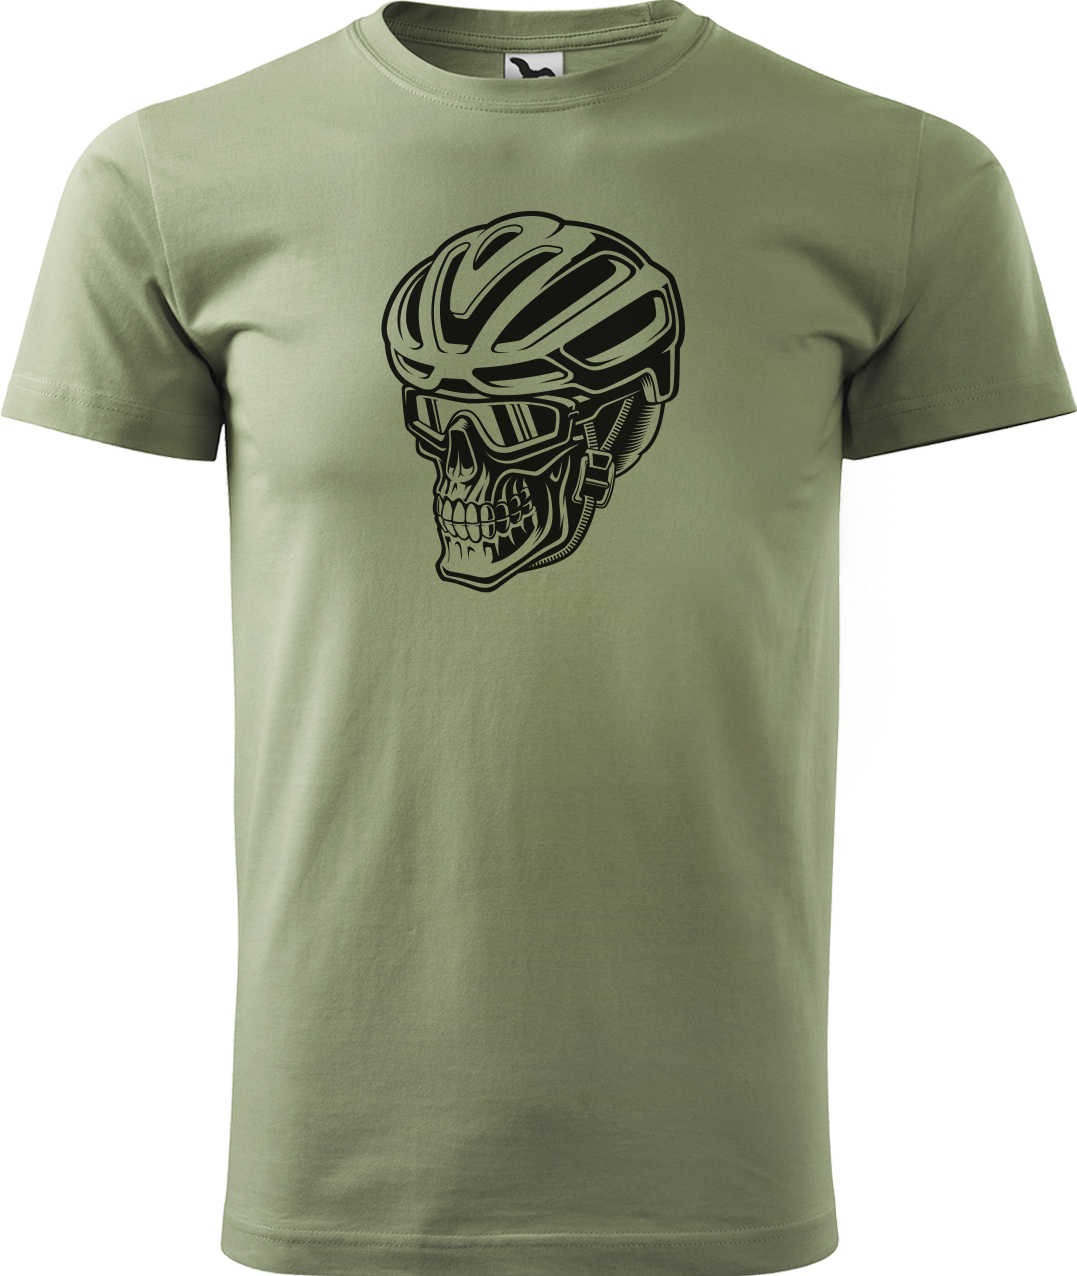 Pánské tričko pro cyklistu - Lebka v helmě Velikost: S, Barva: Světlá khaki (28)